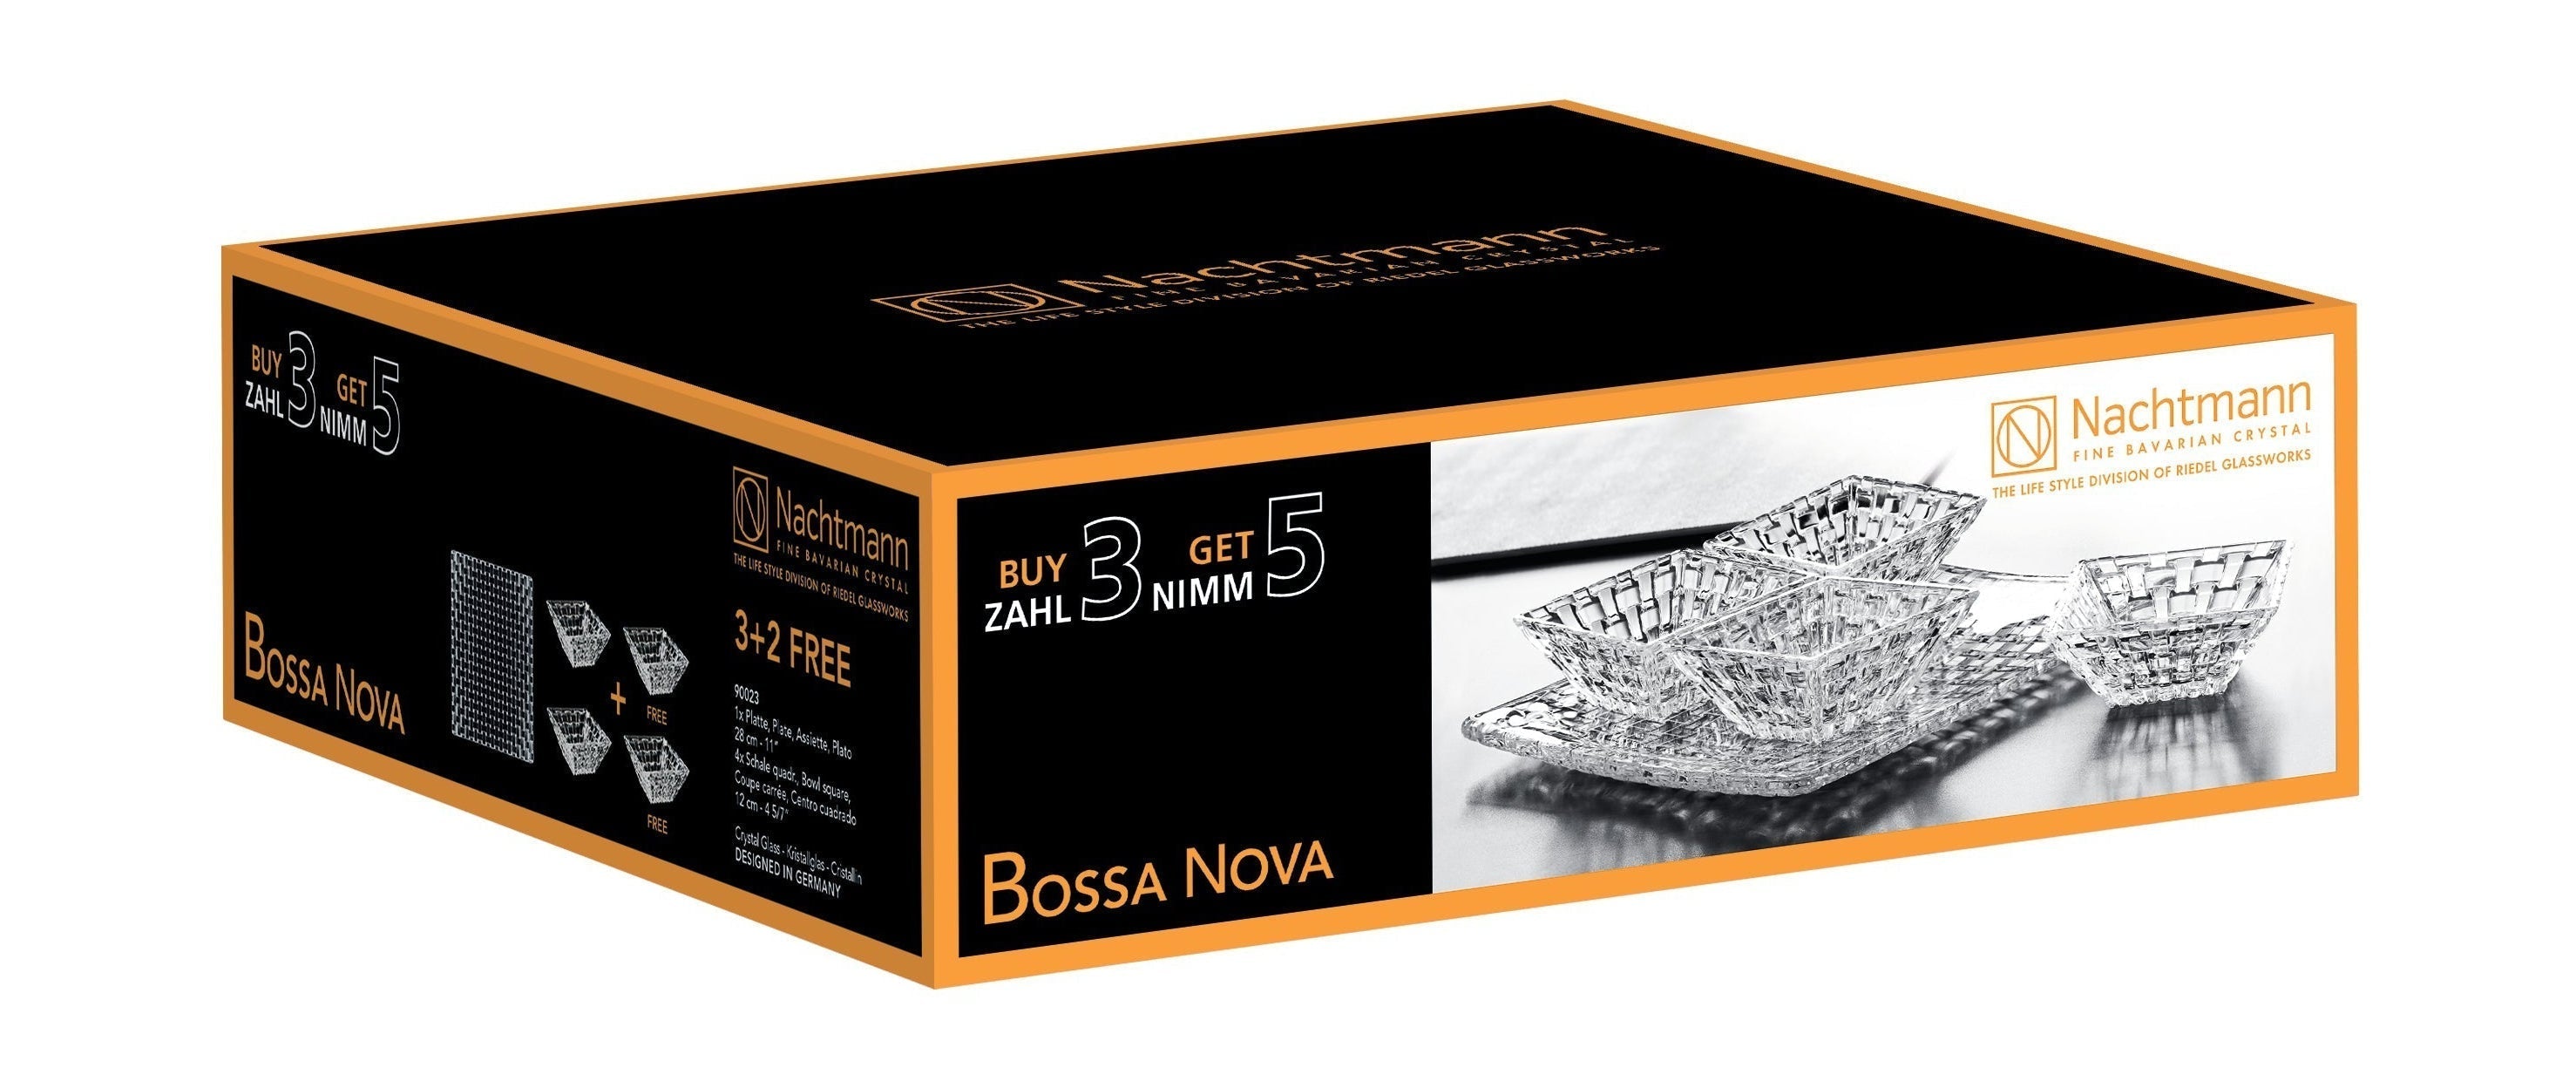 Nachtmann Bossa Nova Plate og Bowl Advantage Set, sett med 5